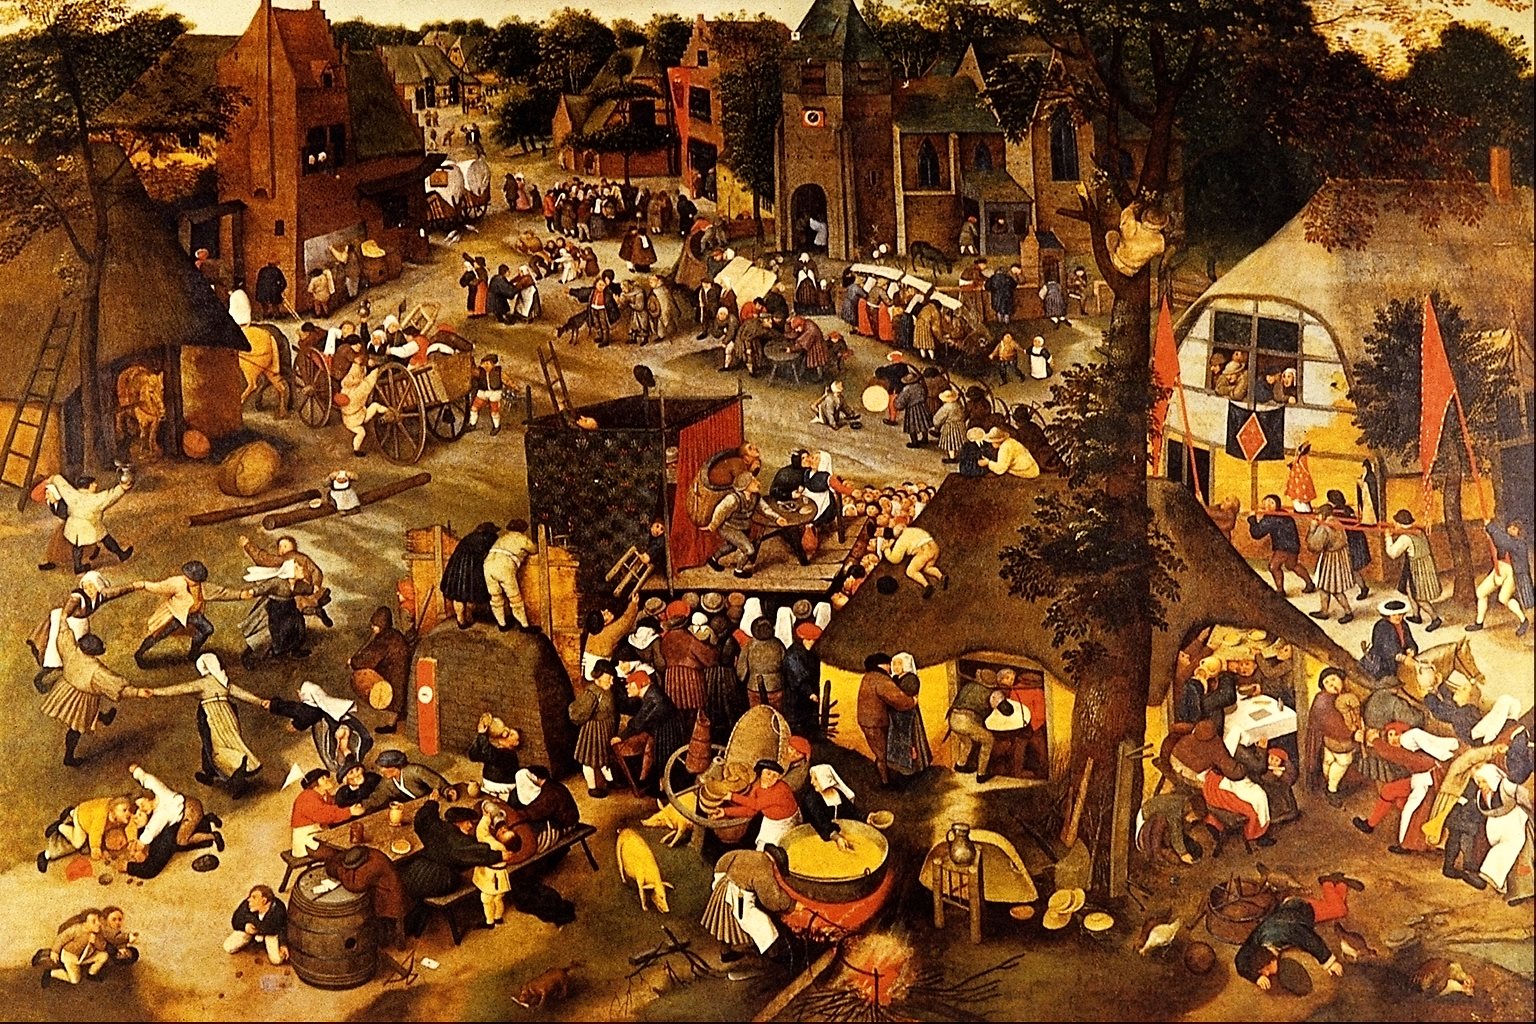 3. Escena cotidiana de la Baja Edad Media. Obra de Pieter Brueghel, el Joven (1564-1638)